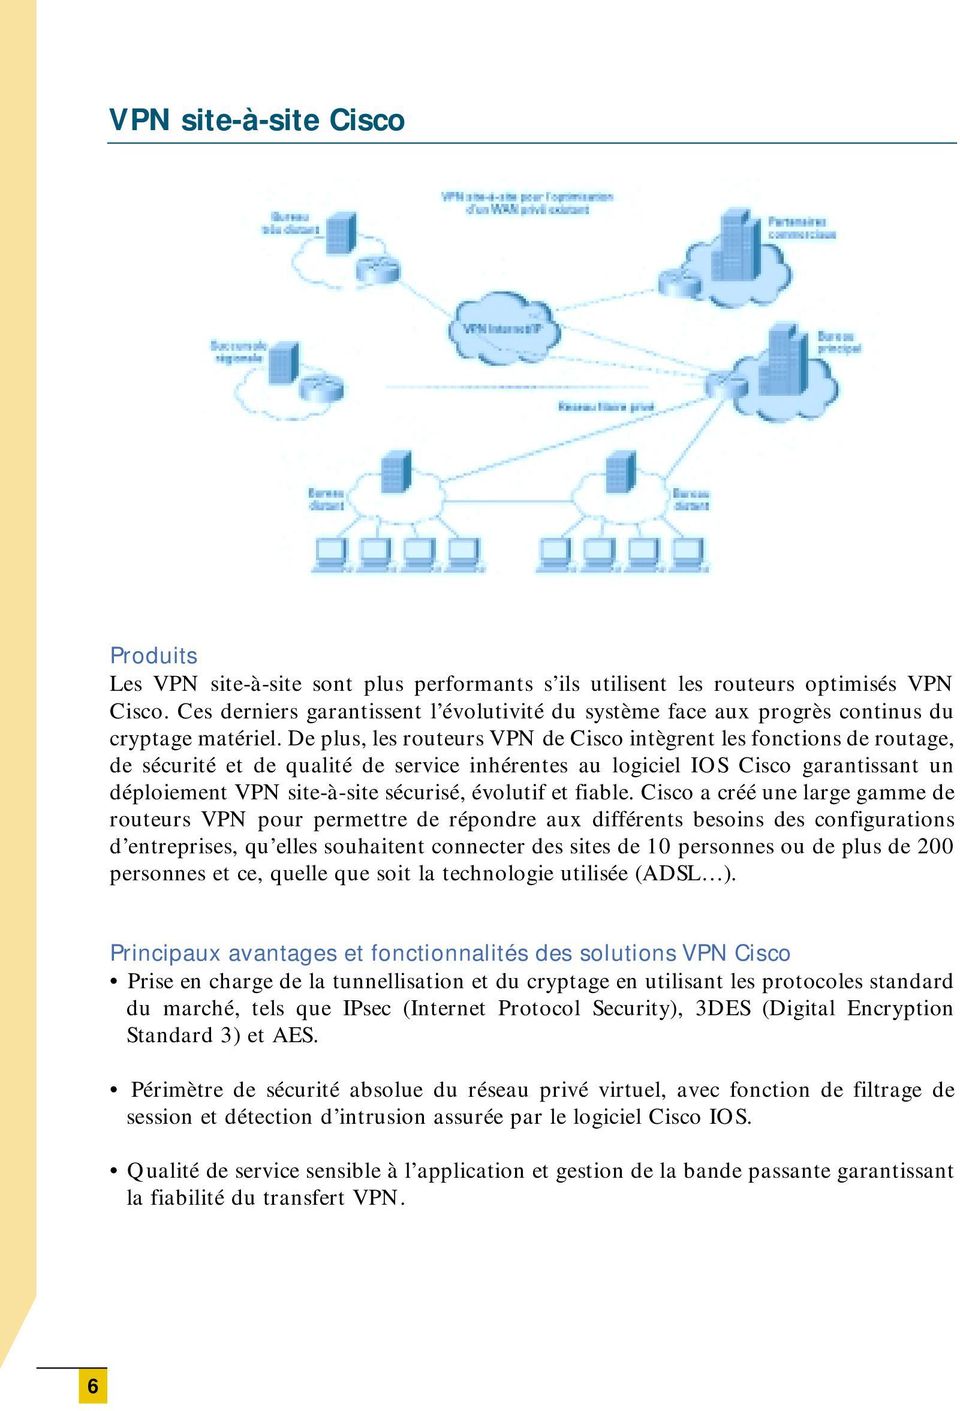 De plus, les routeurs VPN de Cisco intègrent les fonctions de routage, de sécurité et de qualité de service inhérentes au logiciel IOS Cisco garantissant un déploiement VPN site-à-site sécurisé,